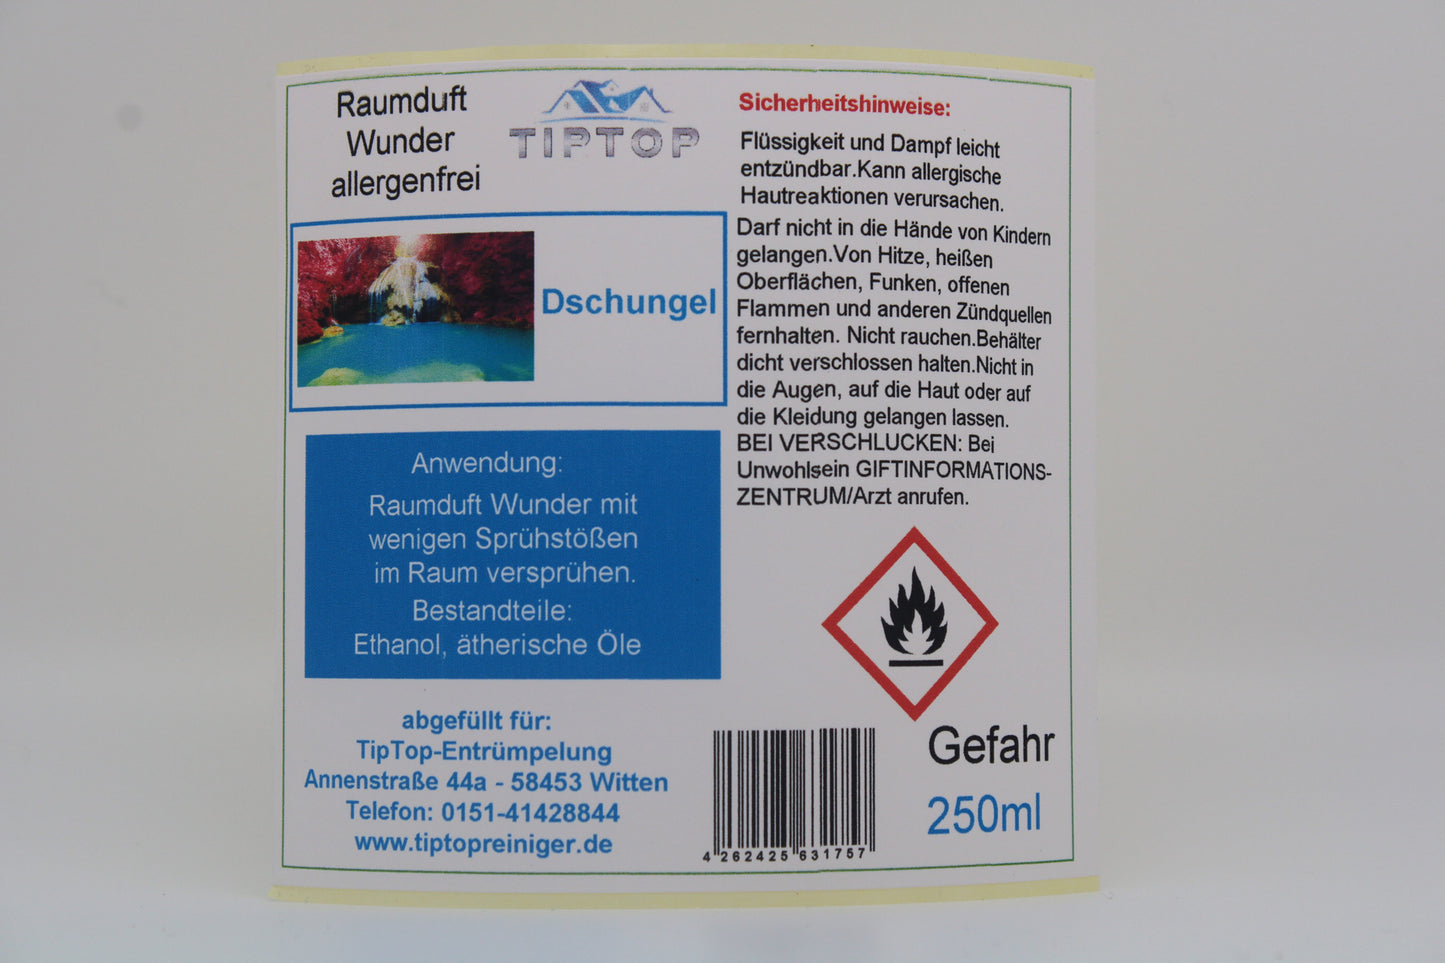 Raumduft-Wunder Allergenfrei -250ml- mehrere Duftnoten zur Auswahl